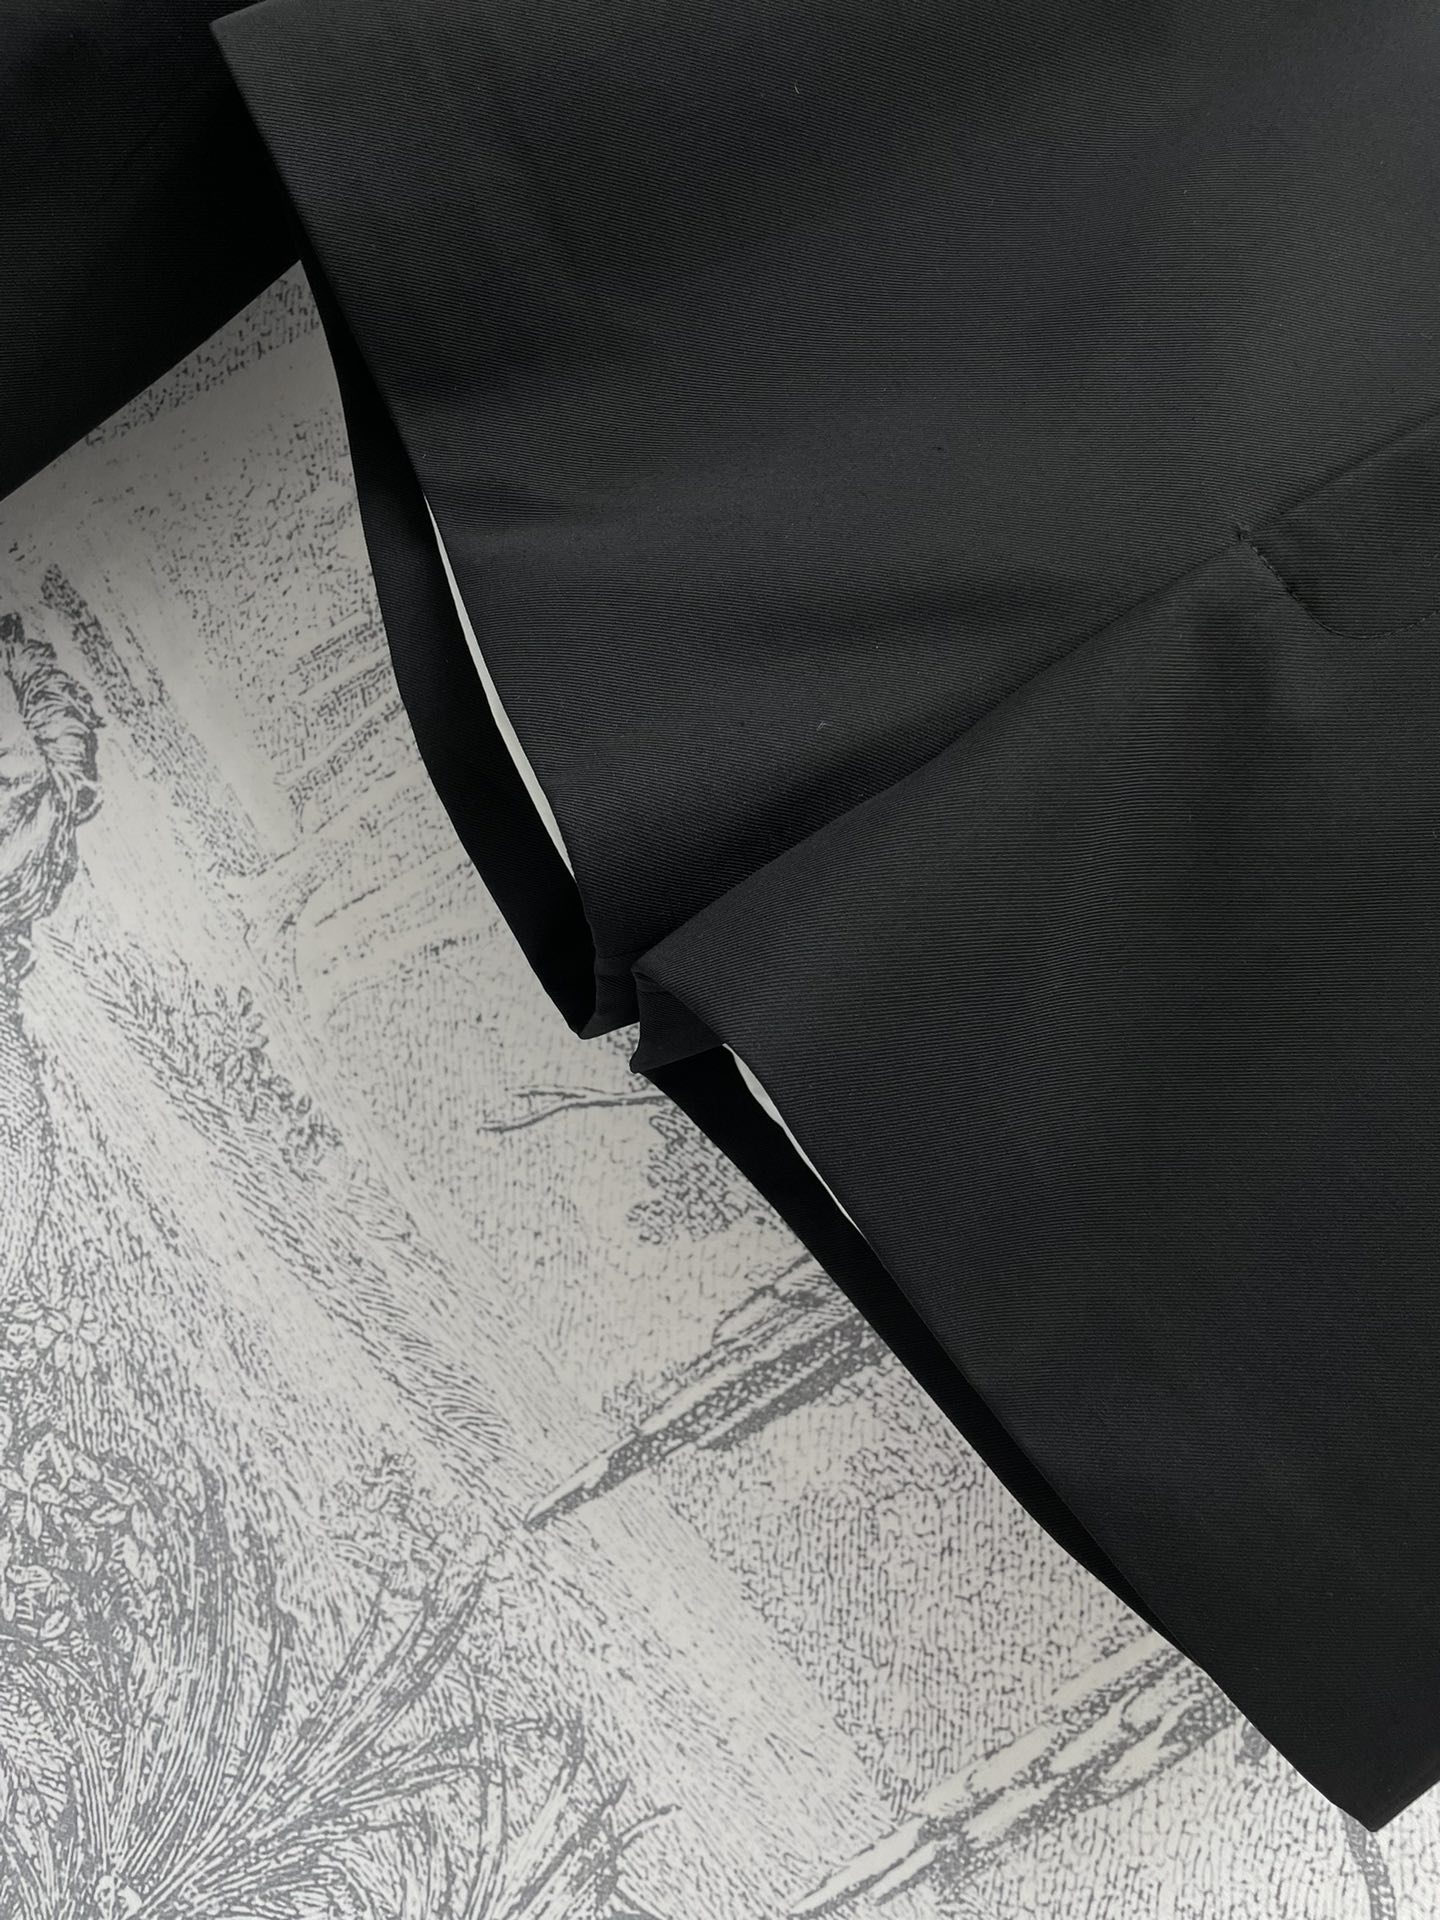 G家24春夏极简主义风格西服套装双排扣西装+高腰短裤的搭配时髦气质代表四粒扣西装版型恰到好处的廓形剪裁百